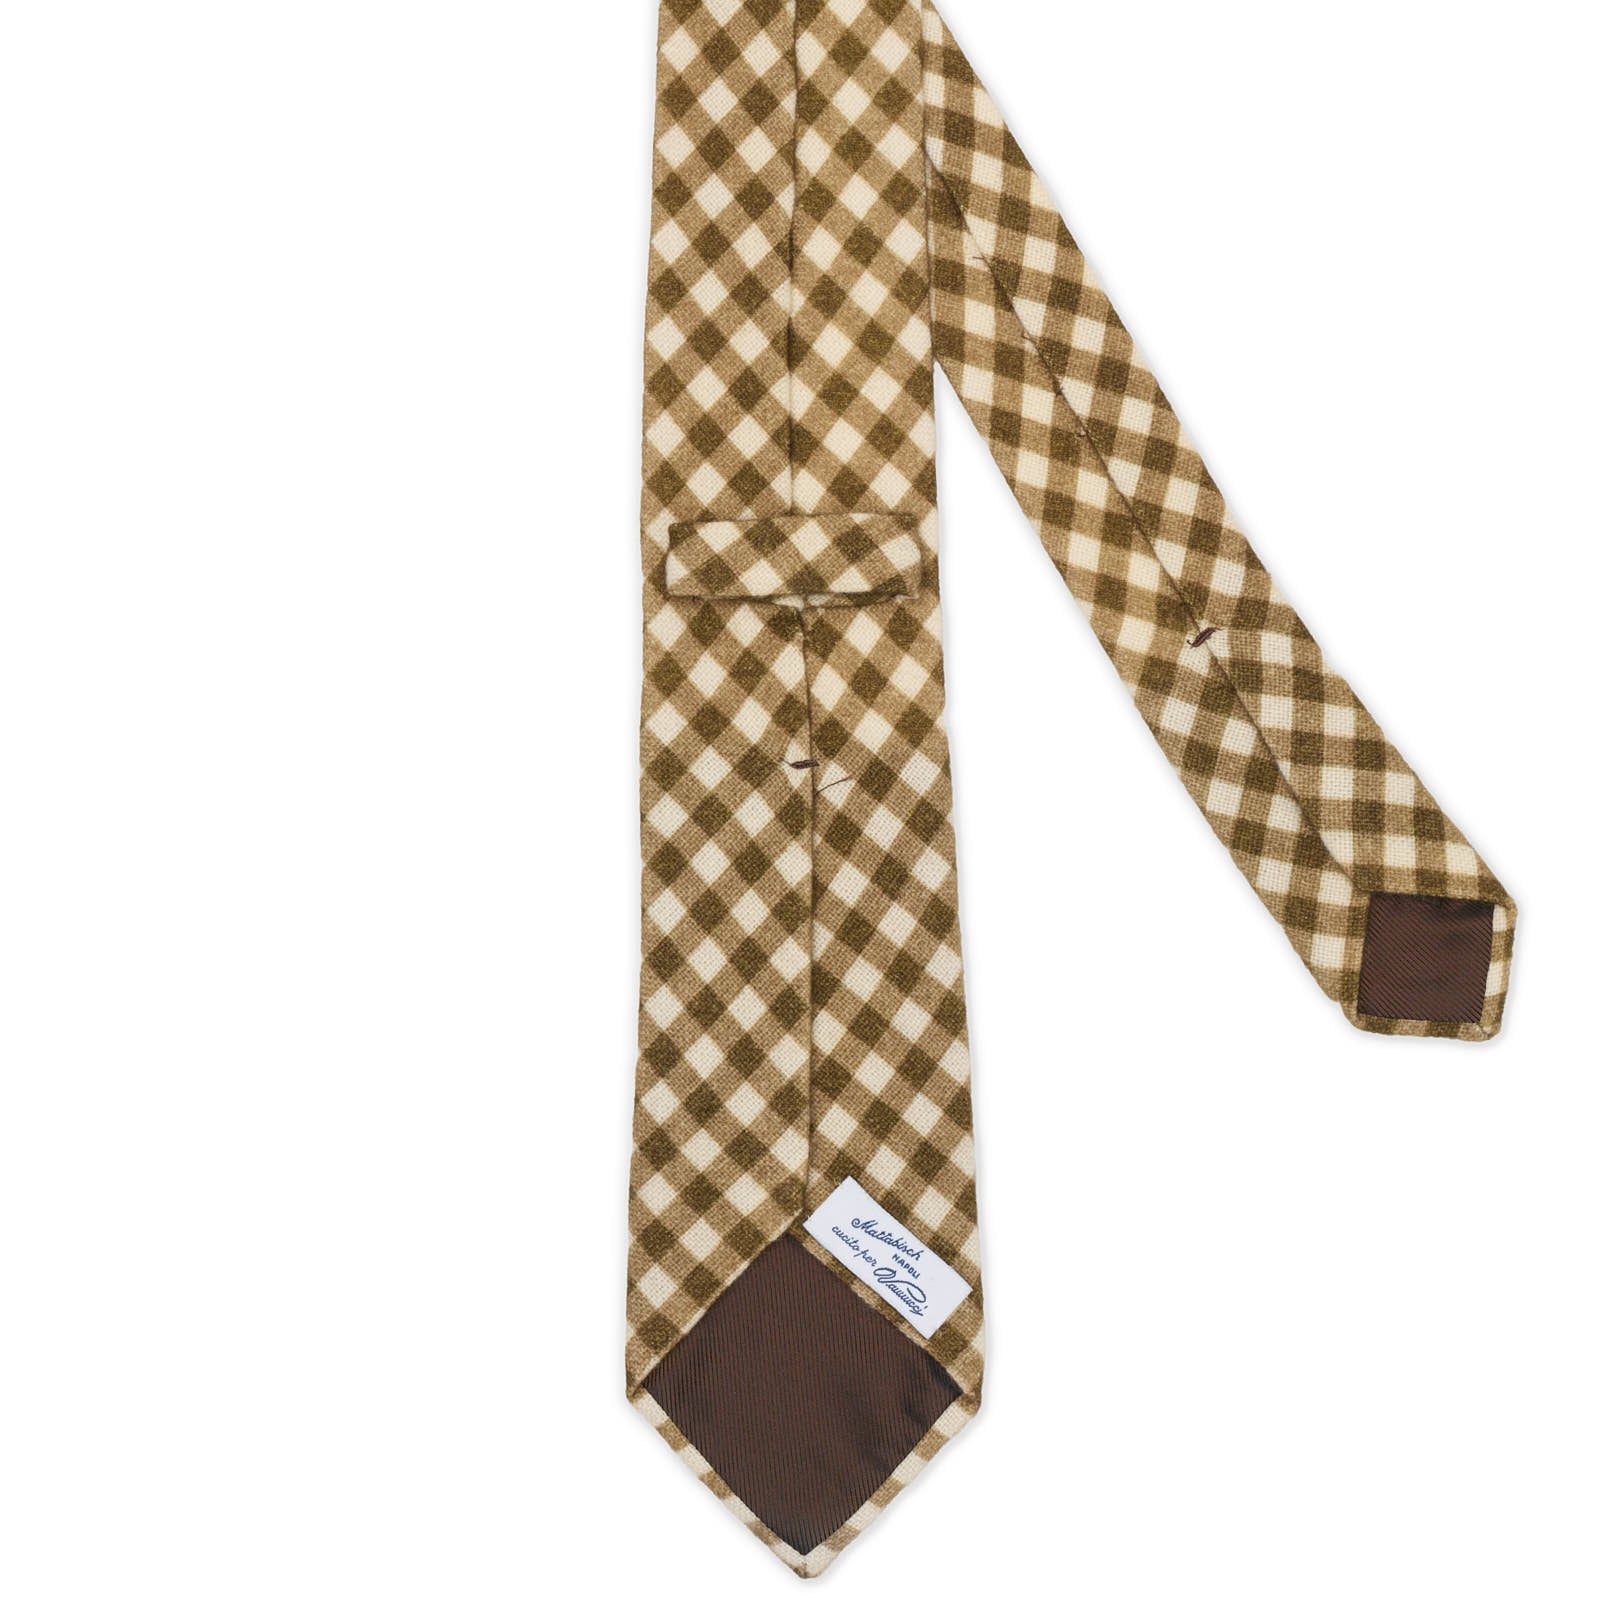 MATTABISCH for VANNUCCI Olive Plaid Cashmere Tie NEW